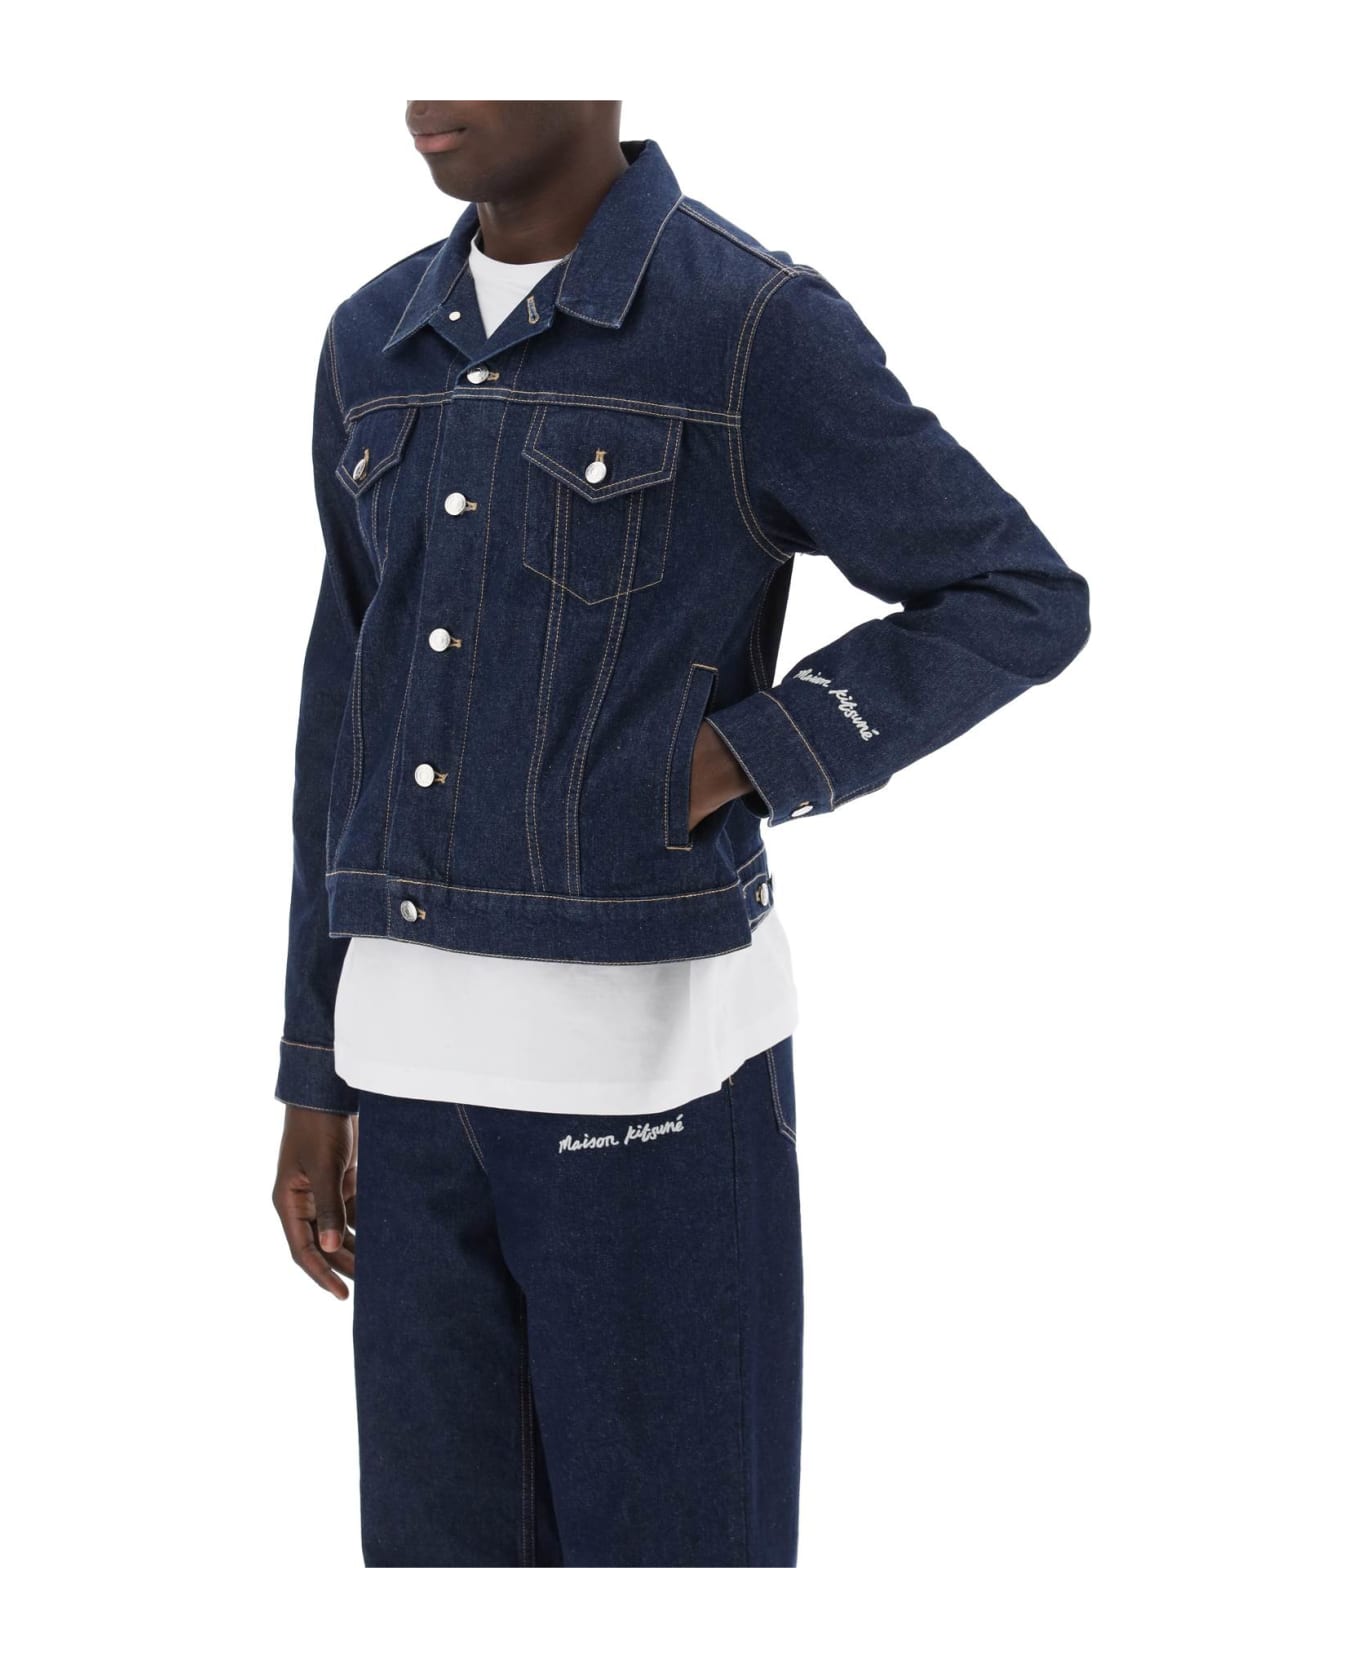 Maison Kitsuné Light Denim Jacket - WASHED INDIGO (Blue) ジャケット